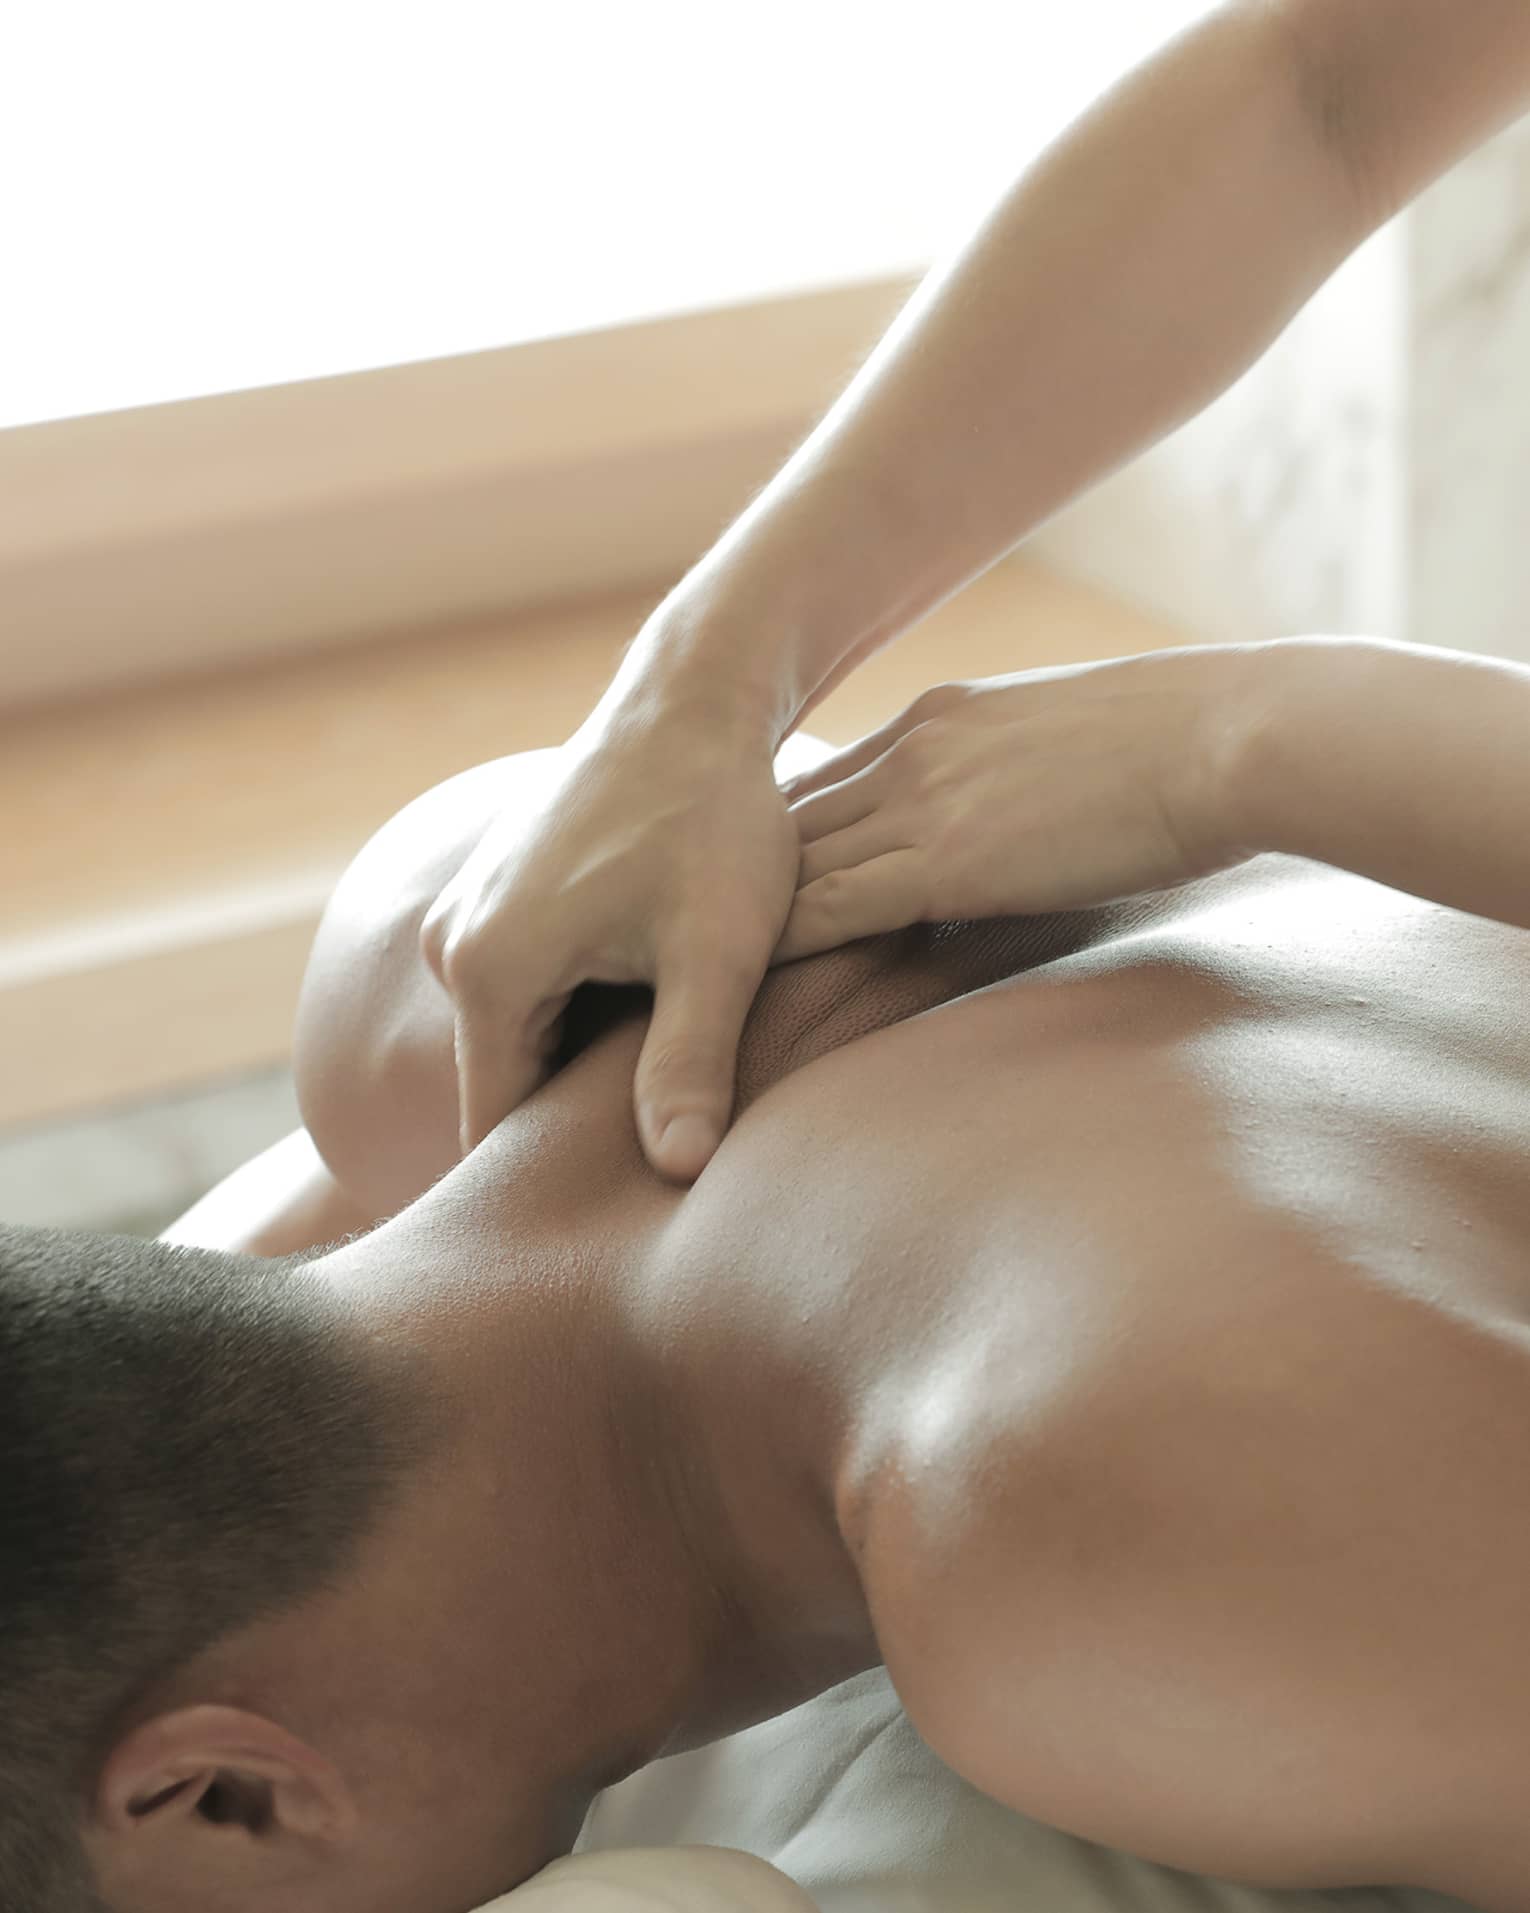 Spa masseuse massages man's bare back, shoulders